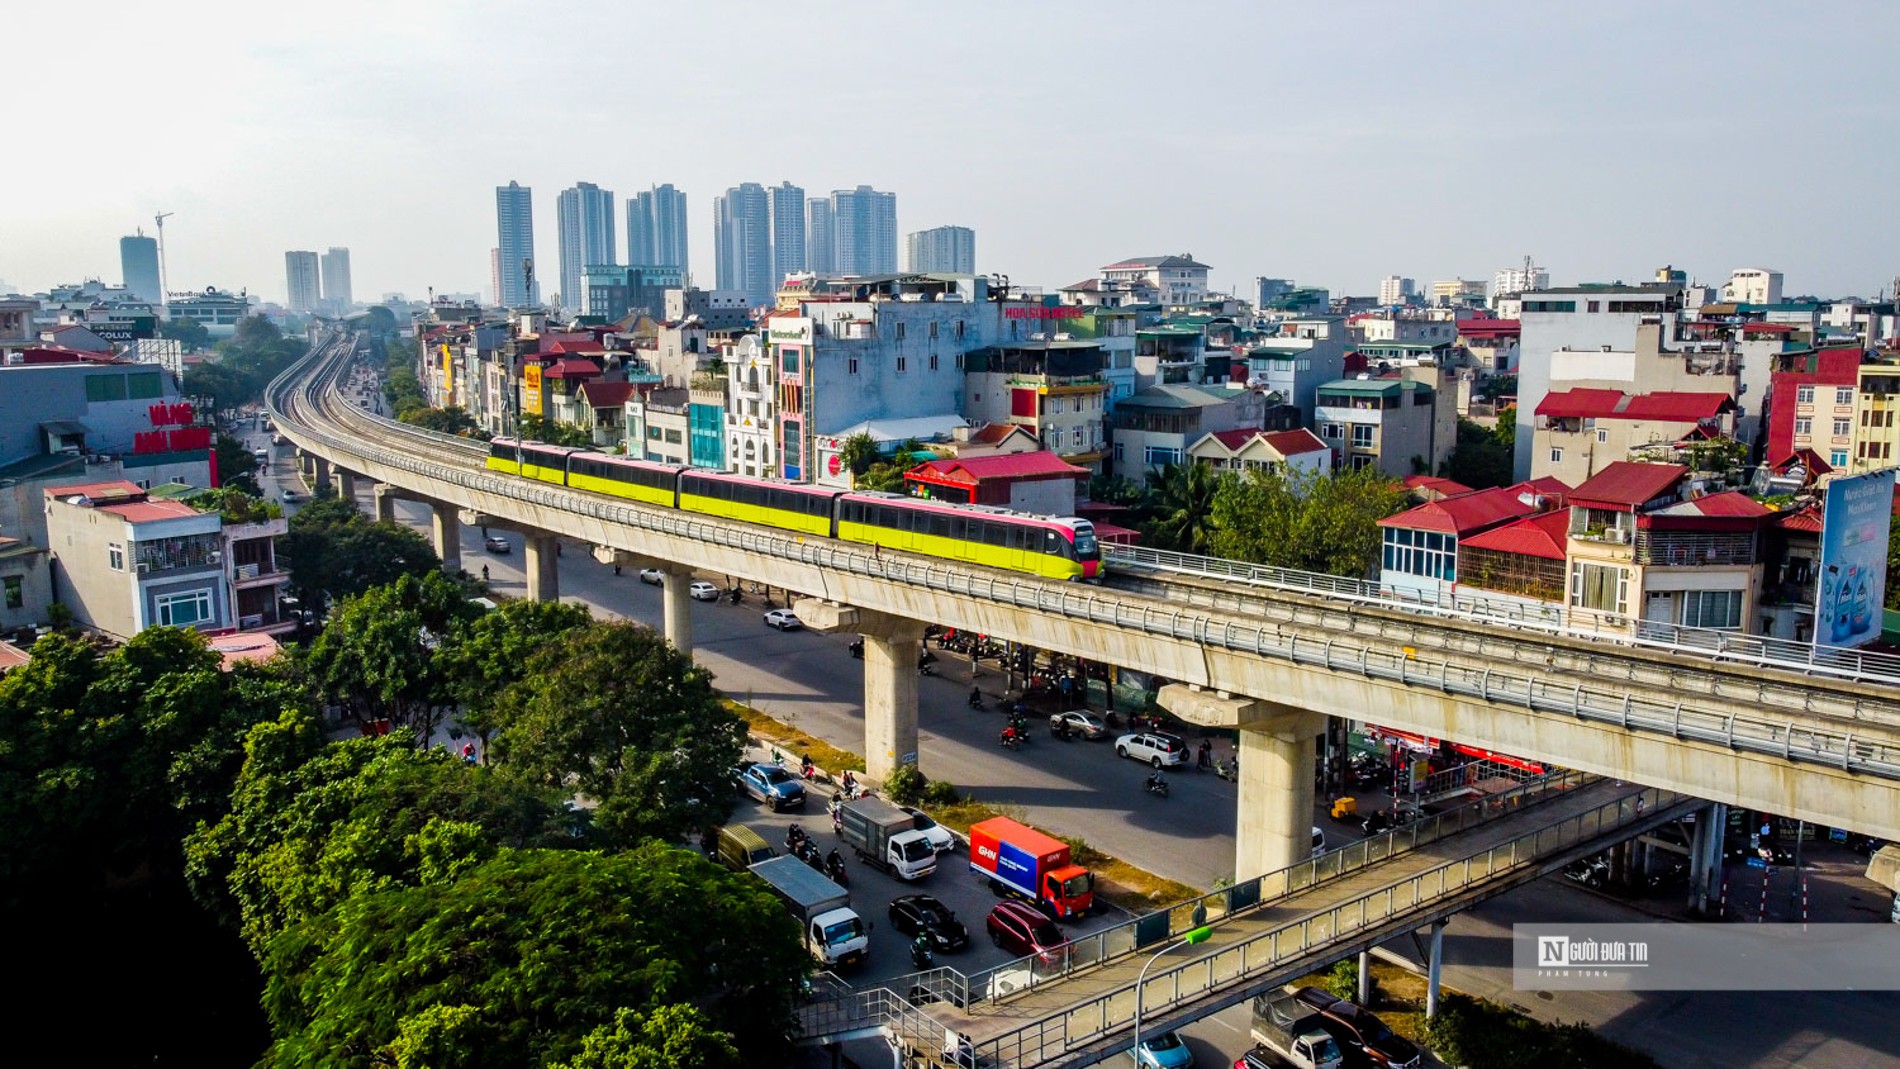 Dân sinh - Vận hành thử 8 đoàn tàu Metro Nhổn – ga Hà Nội để đo hiệu xuất (Hình 4).